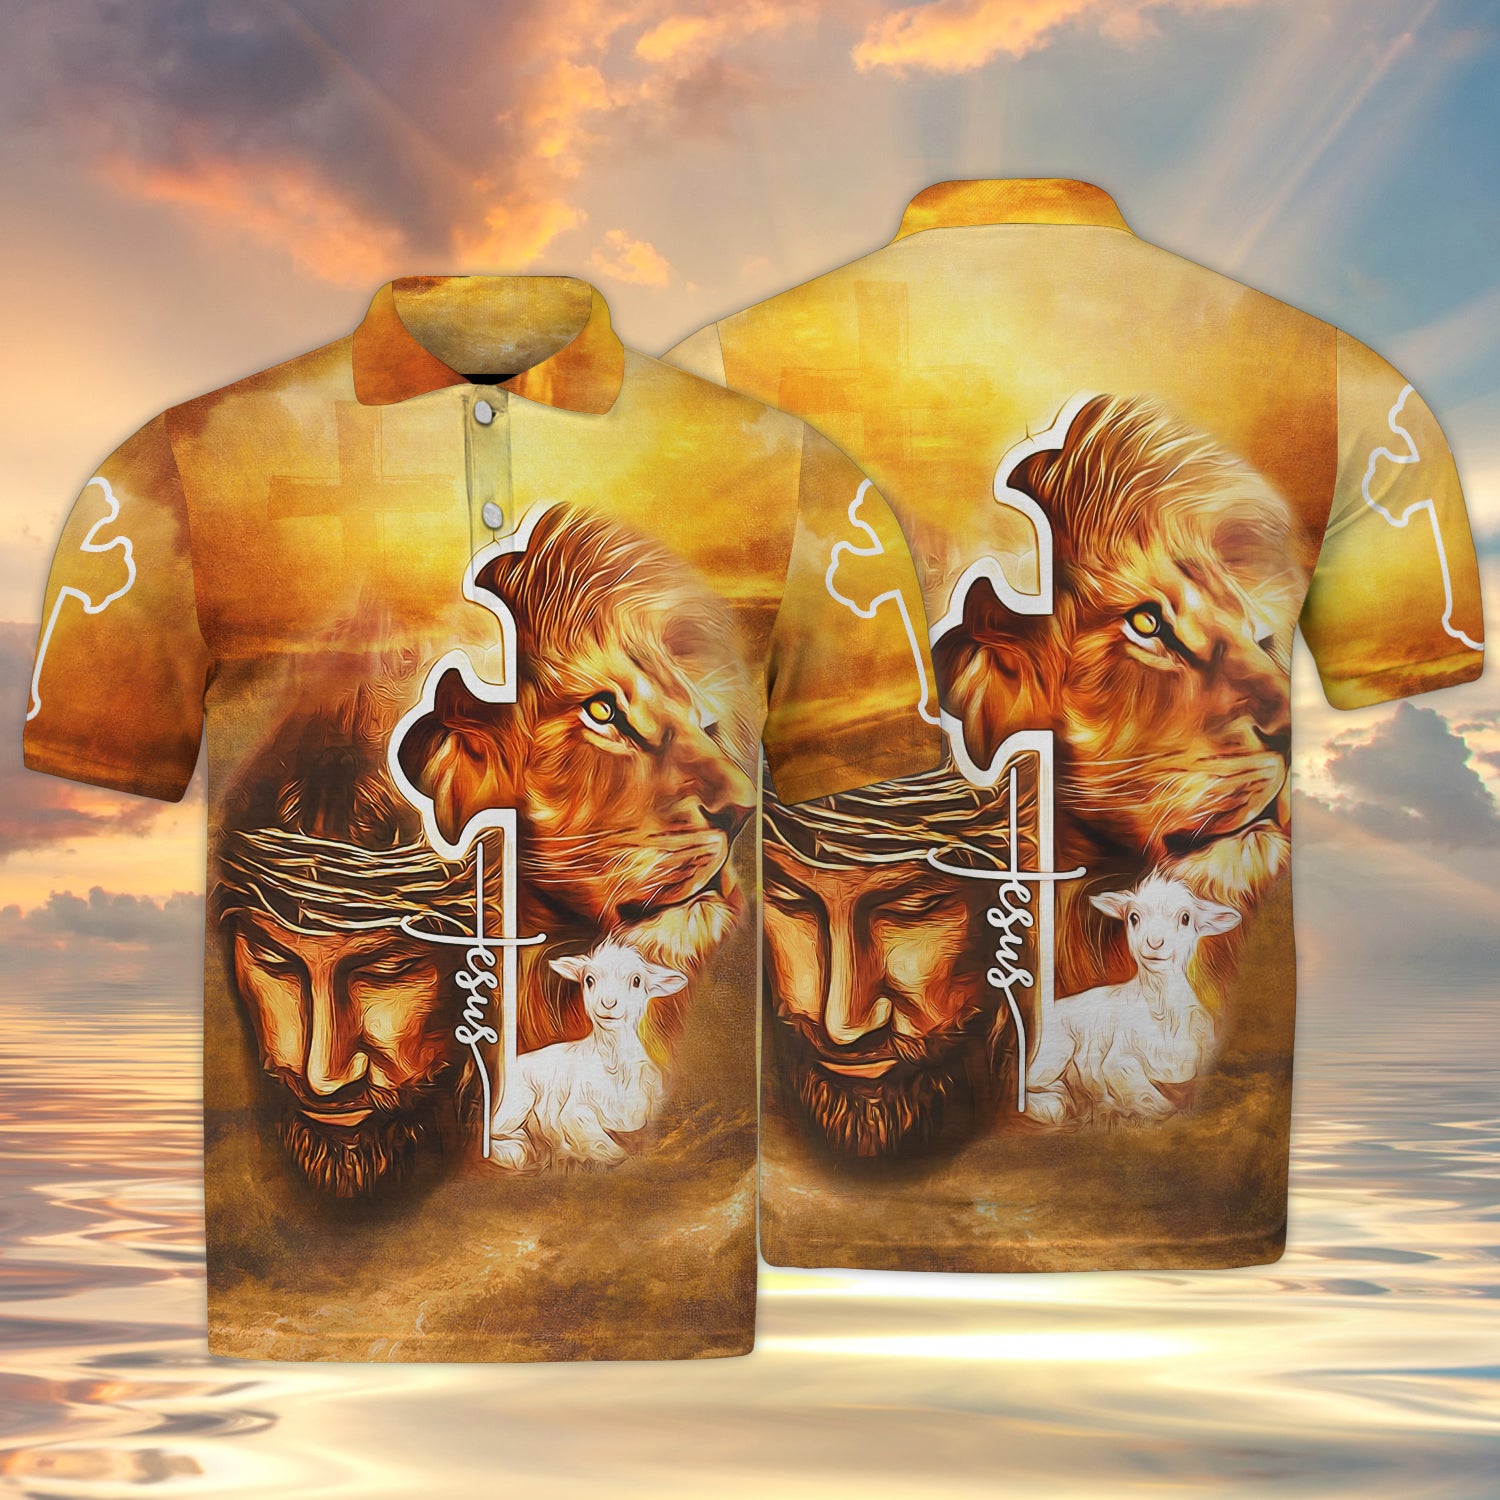 Jesus 3d full print shirt christian gift 1860 htv